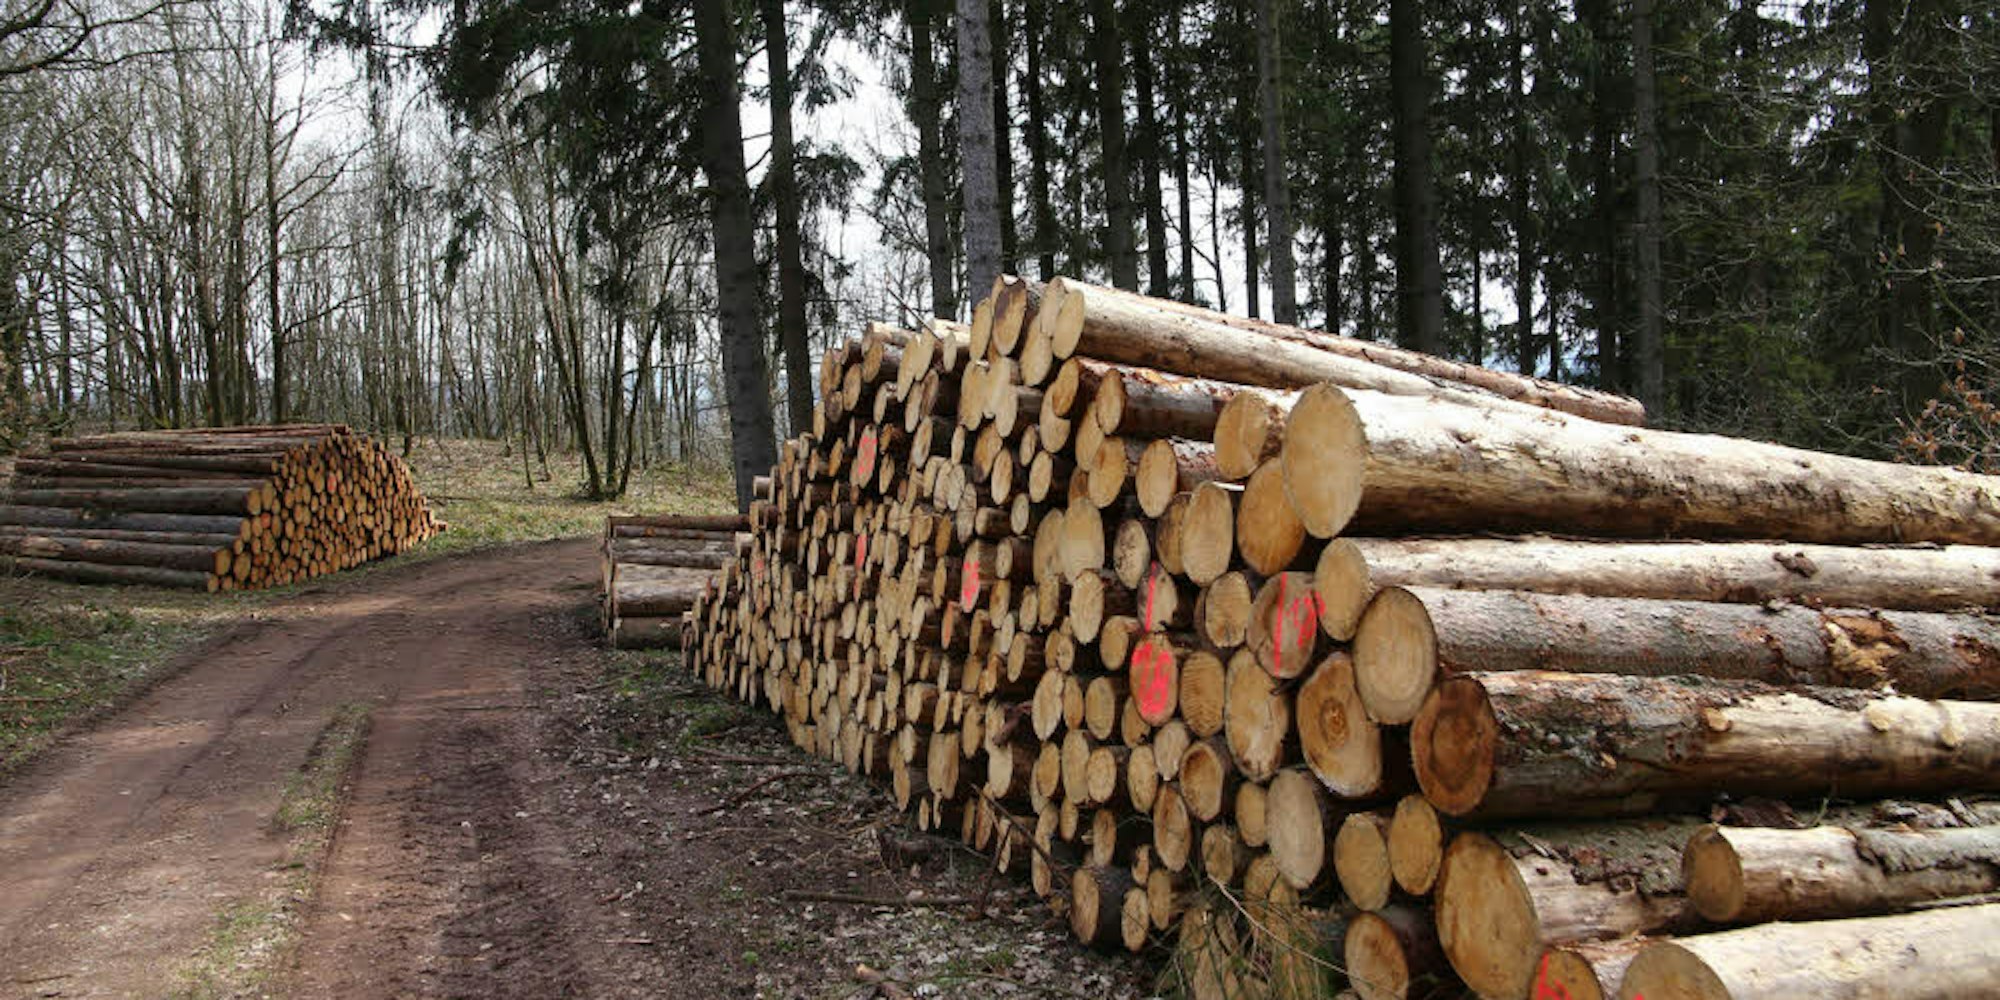 Bis Ende des Jahres wird das Rundholz, das hier abfahrbereit gestapelt ist, vom Landesbetrieb Wald und Holz vermarktet.